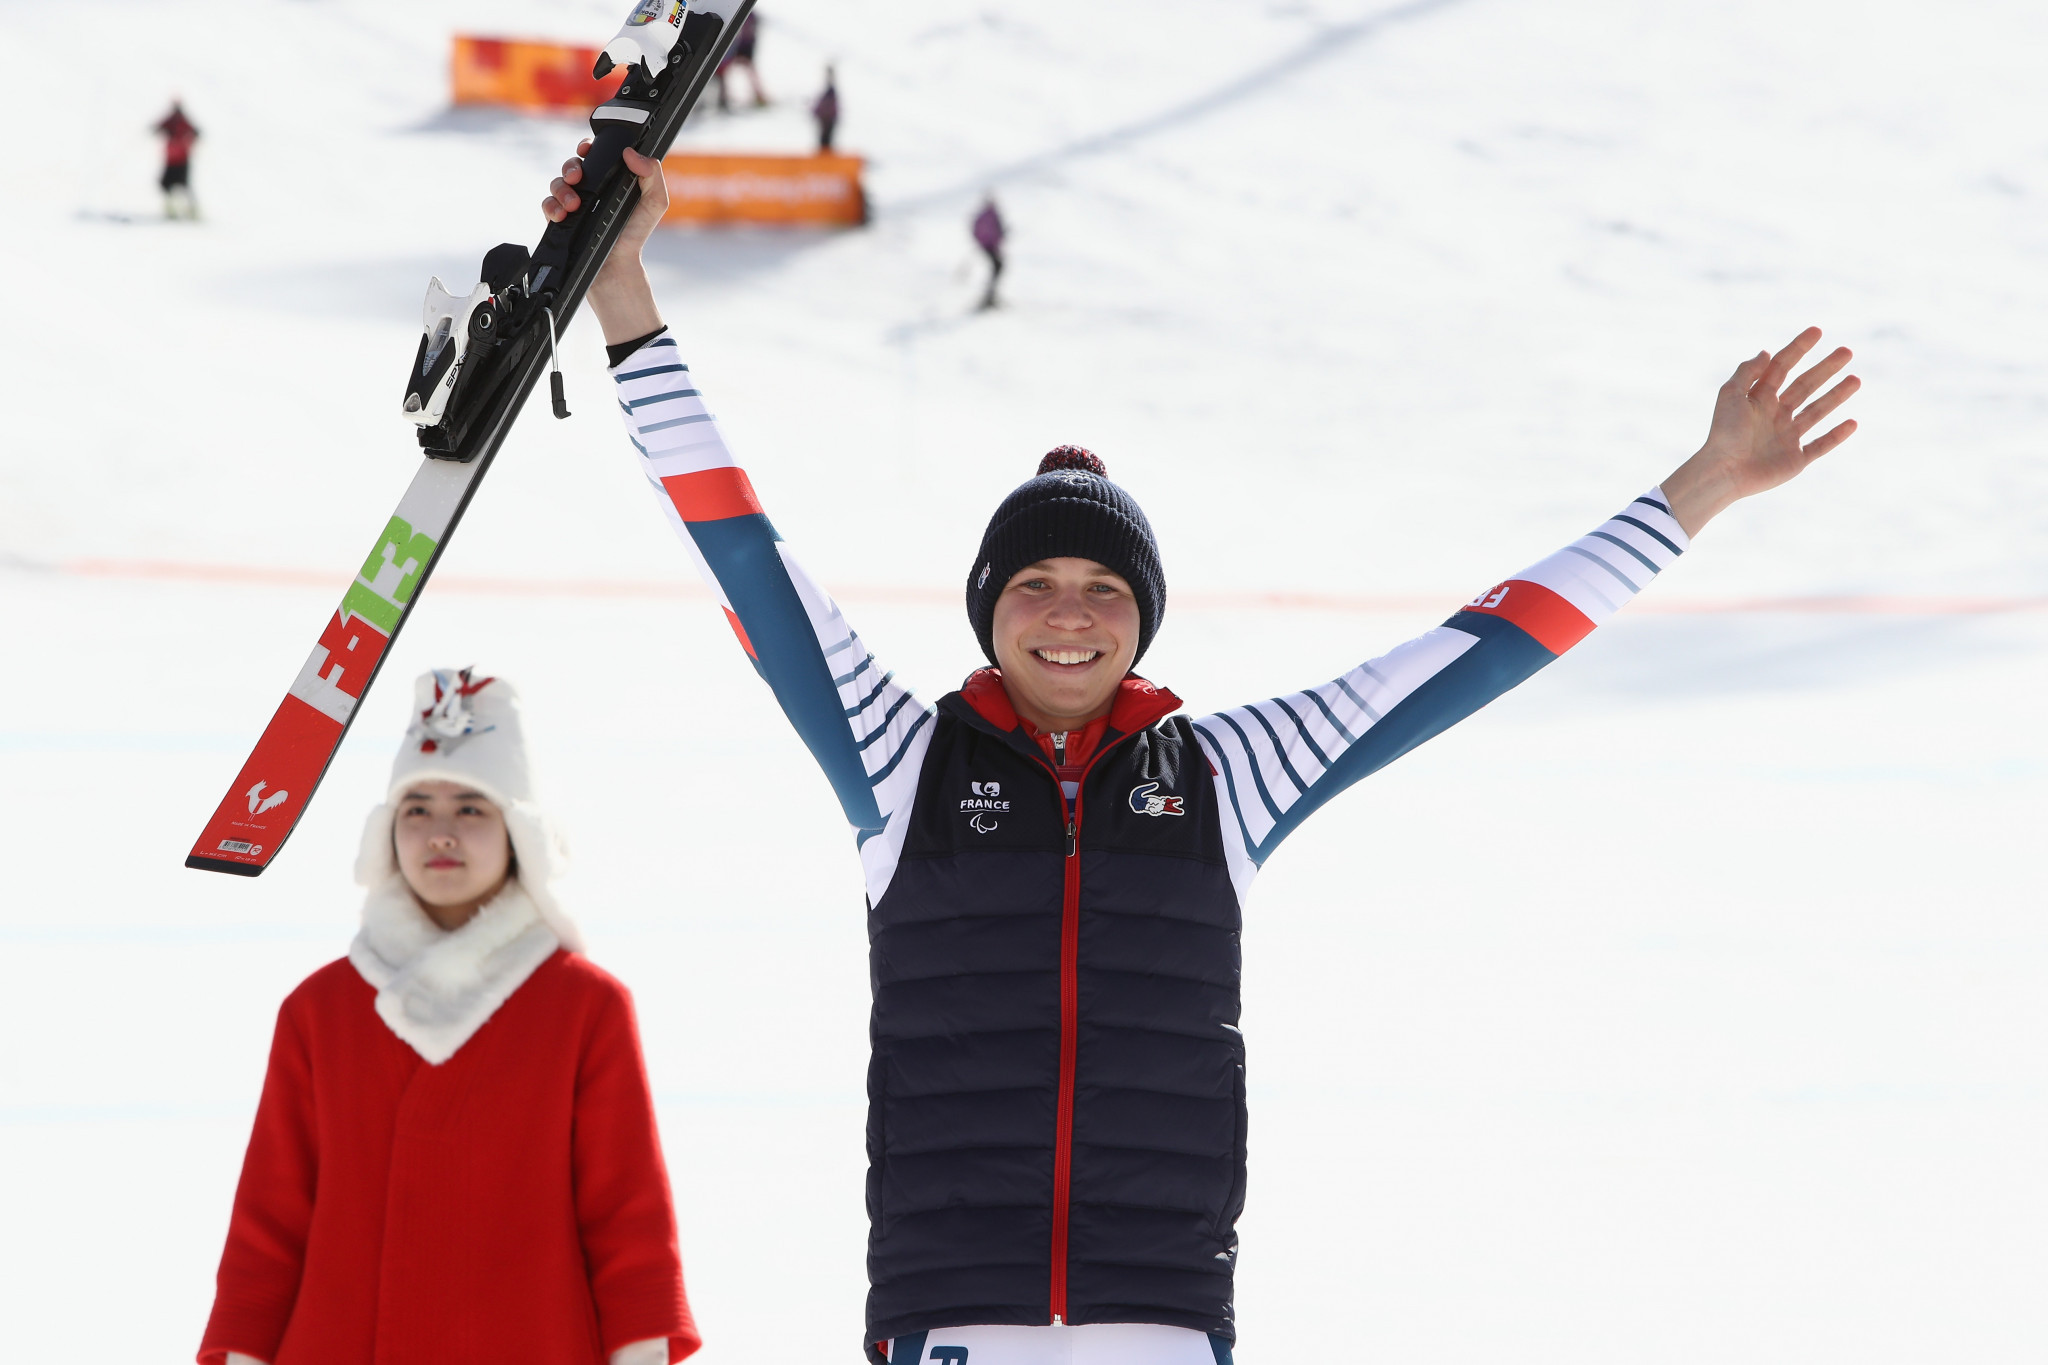 Arthur Bauchet won the men's standing giant slalom in Veysonnaz ©Getty Images